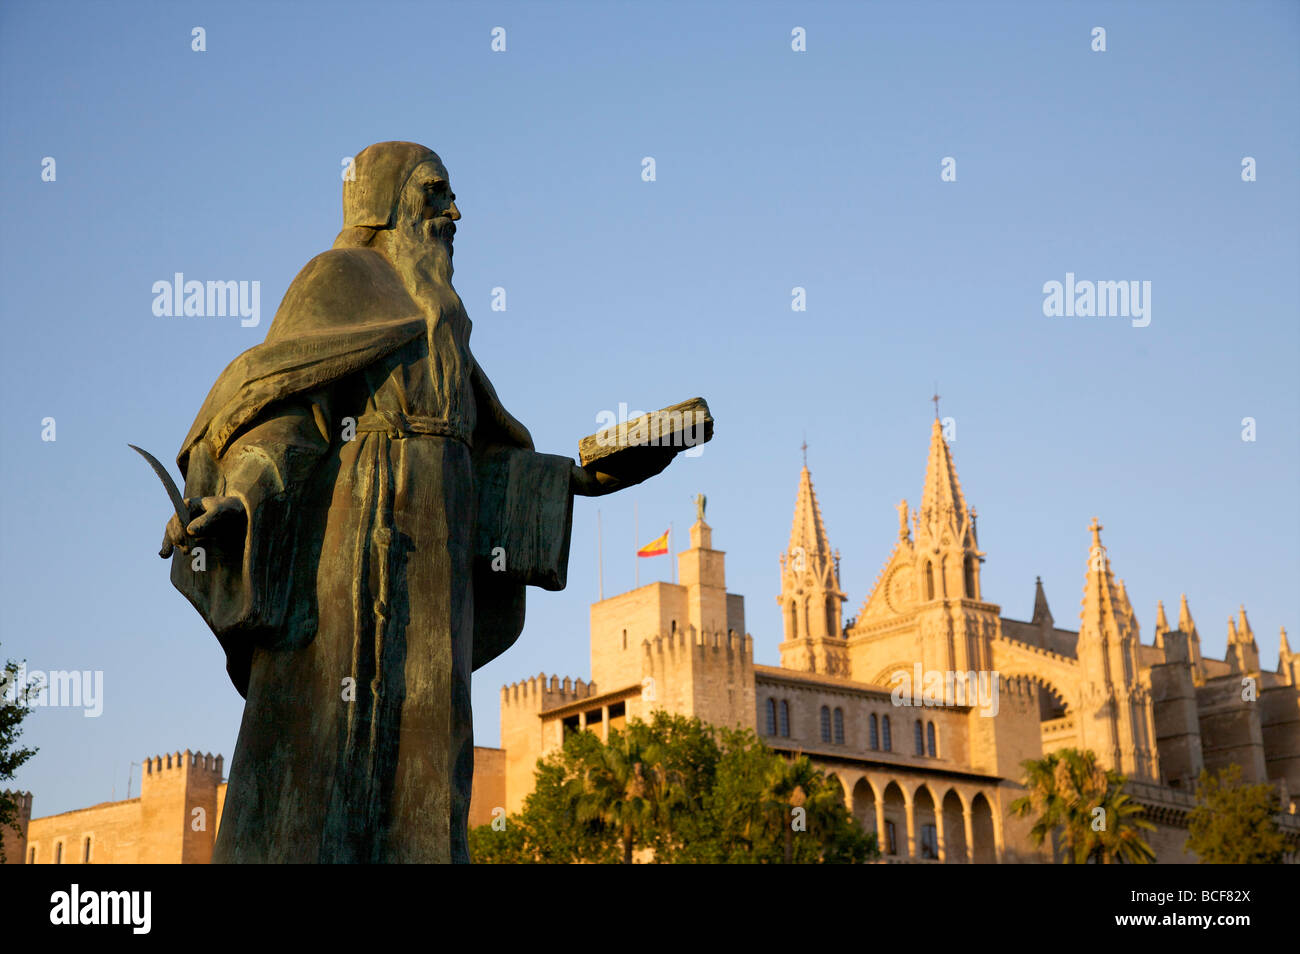 Ramon Llull Statue, Palma, Mallorca, Spain Stock Photo